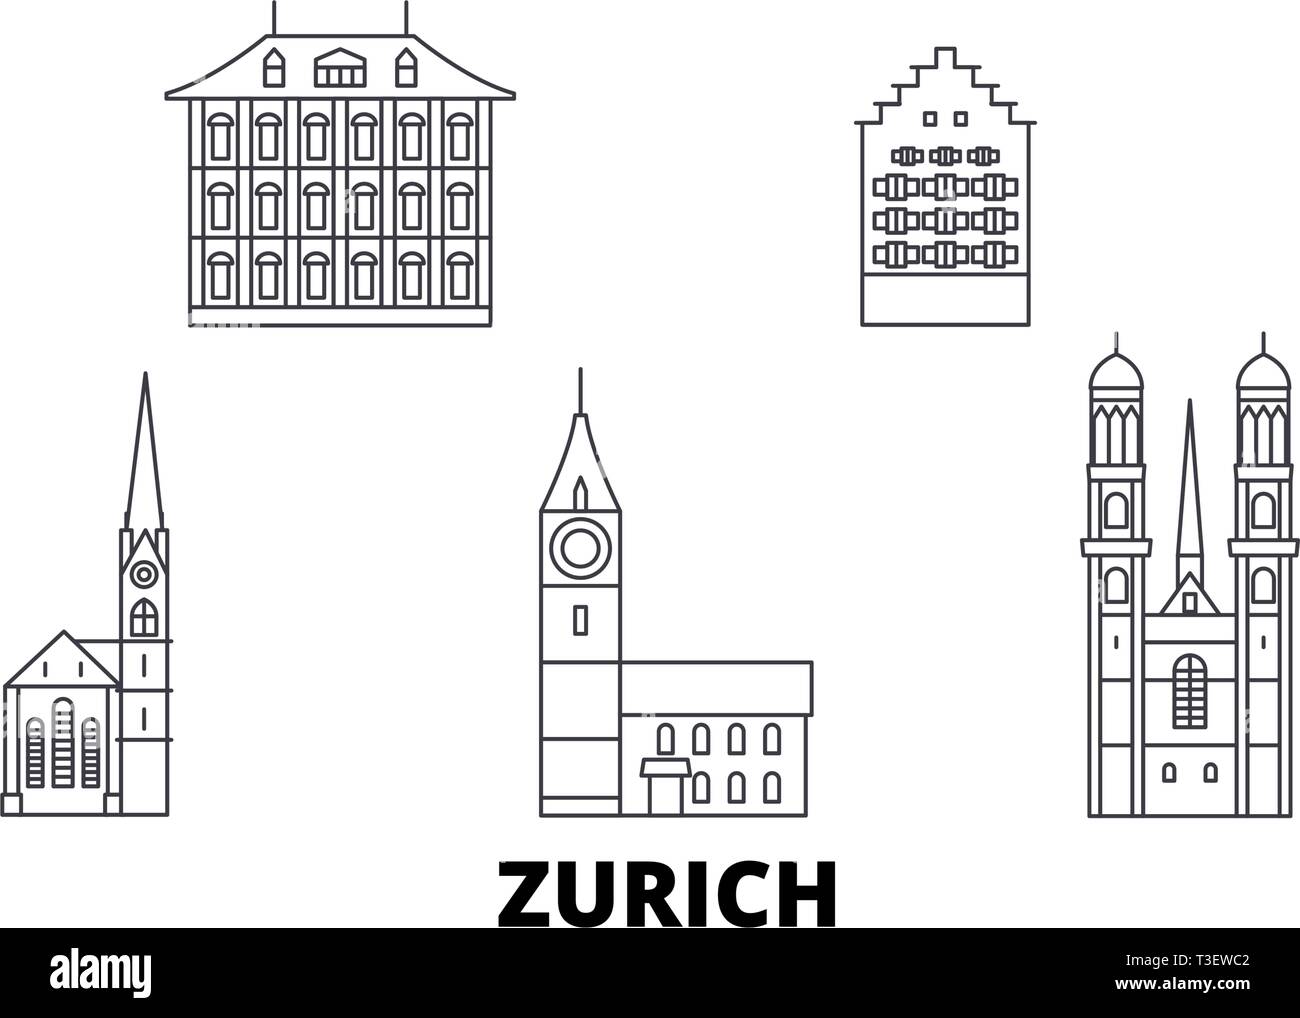 Switzerland, Zurich line travel skyline set. Switzerland, Zurich outline city vector illustration, symbol, travel sights, landmarks. Stock Vector